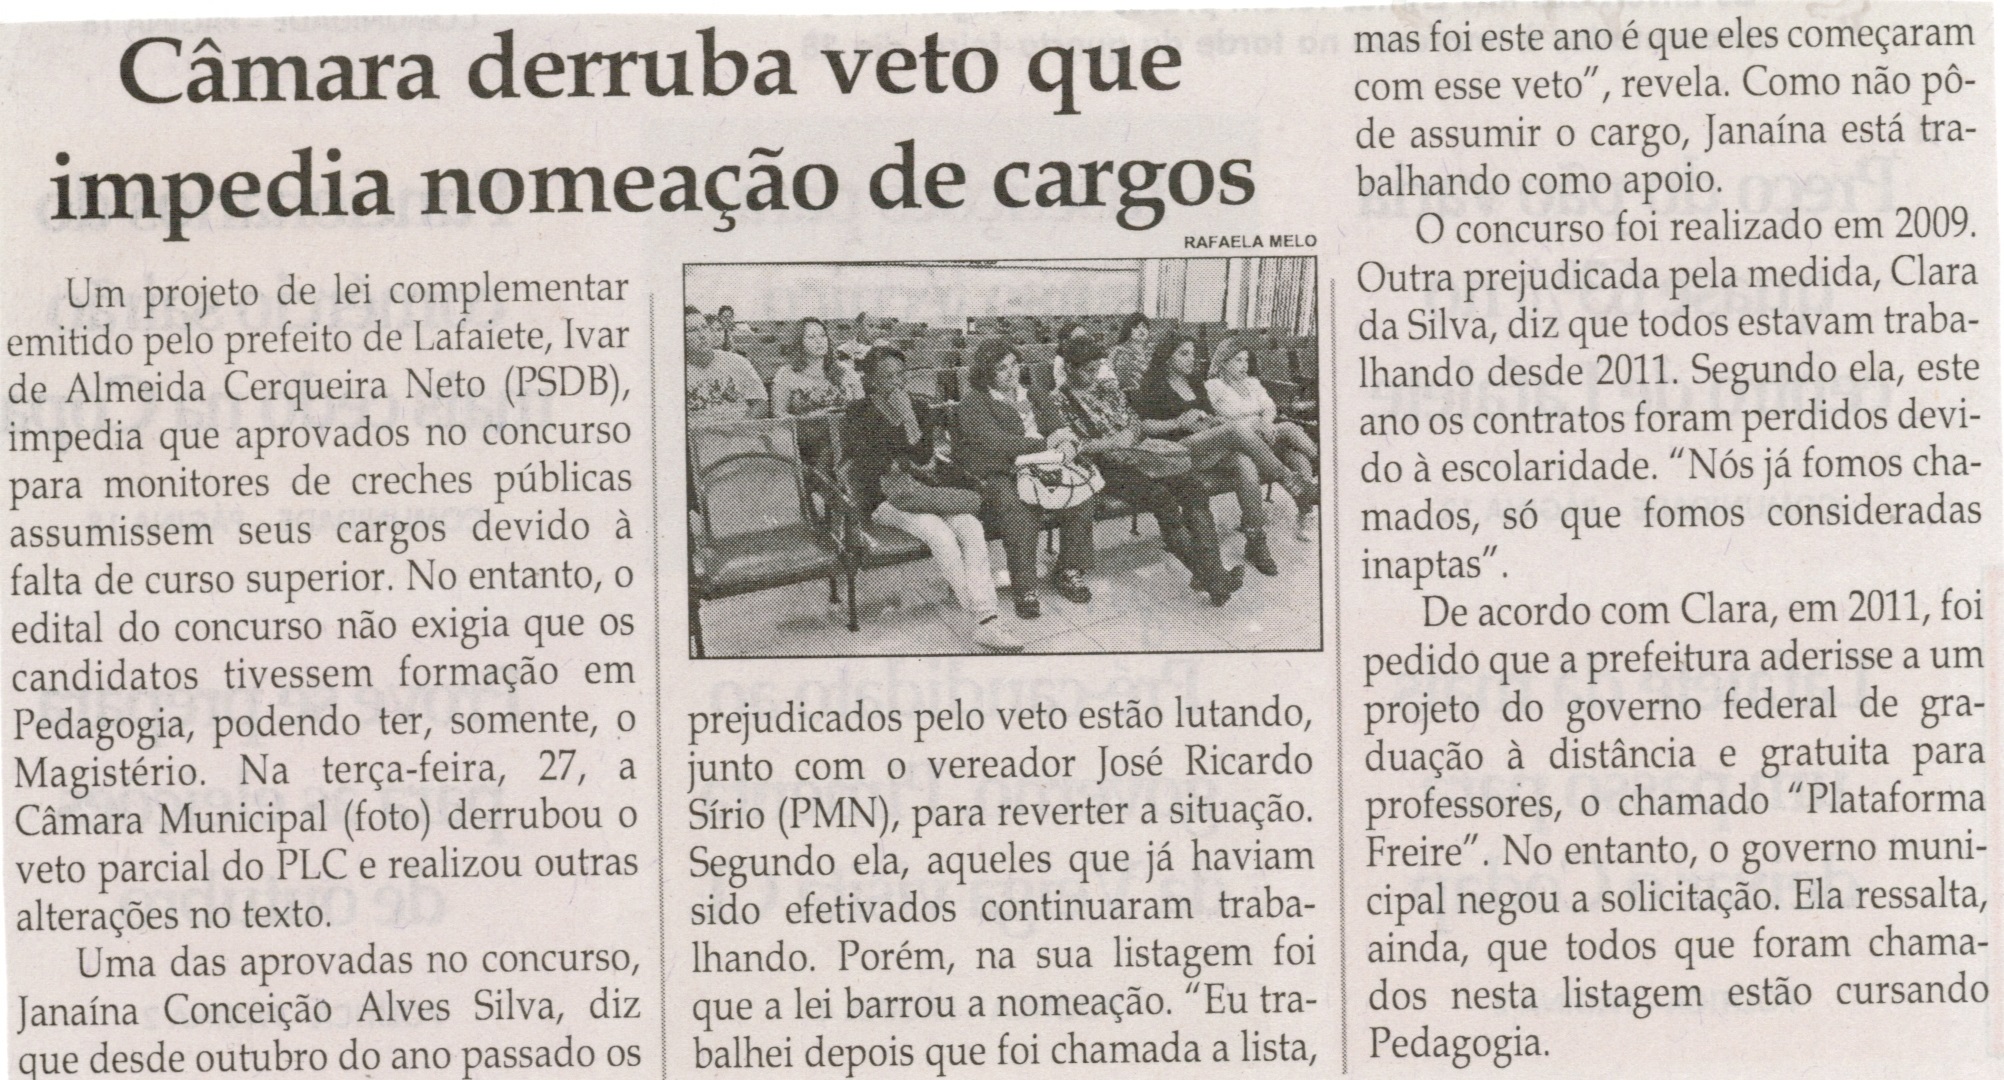 Câmara derruba veto que impedia nomeção de cargos. Jornal Correio da Cidade, Conselheiro Lafaiete,  31 mai. 2014, p. 2.